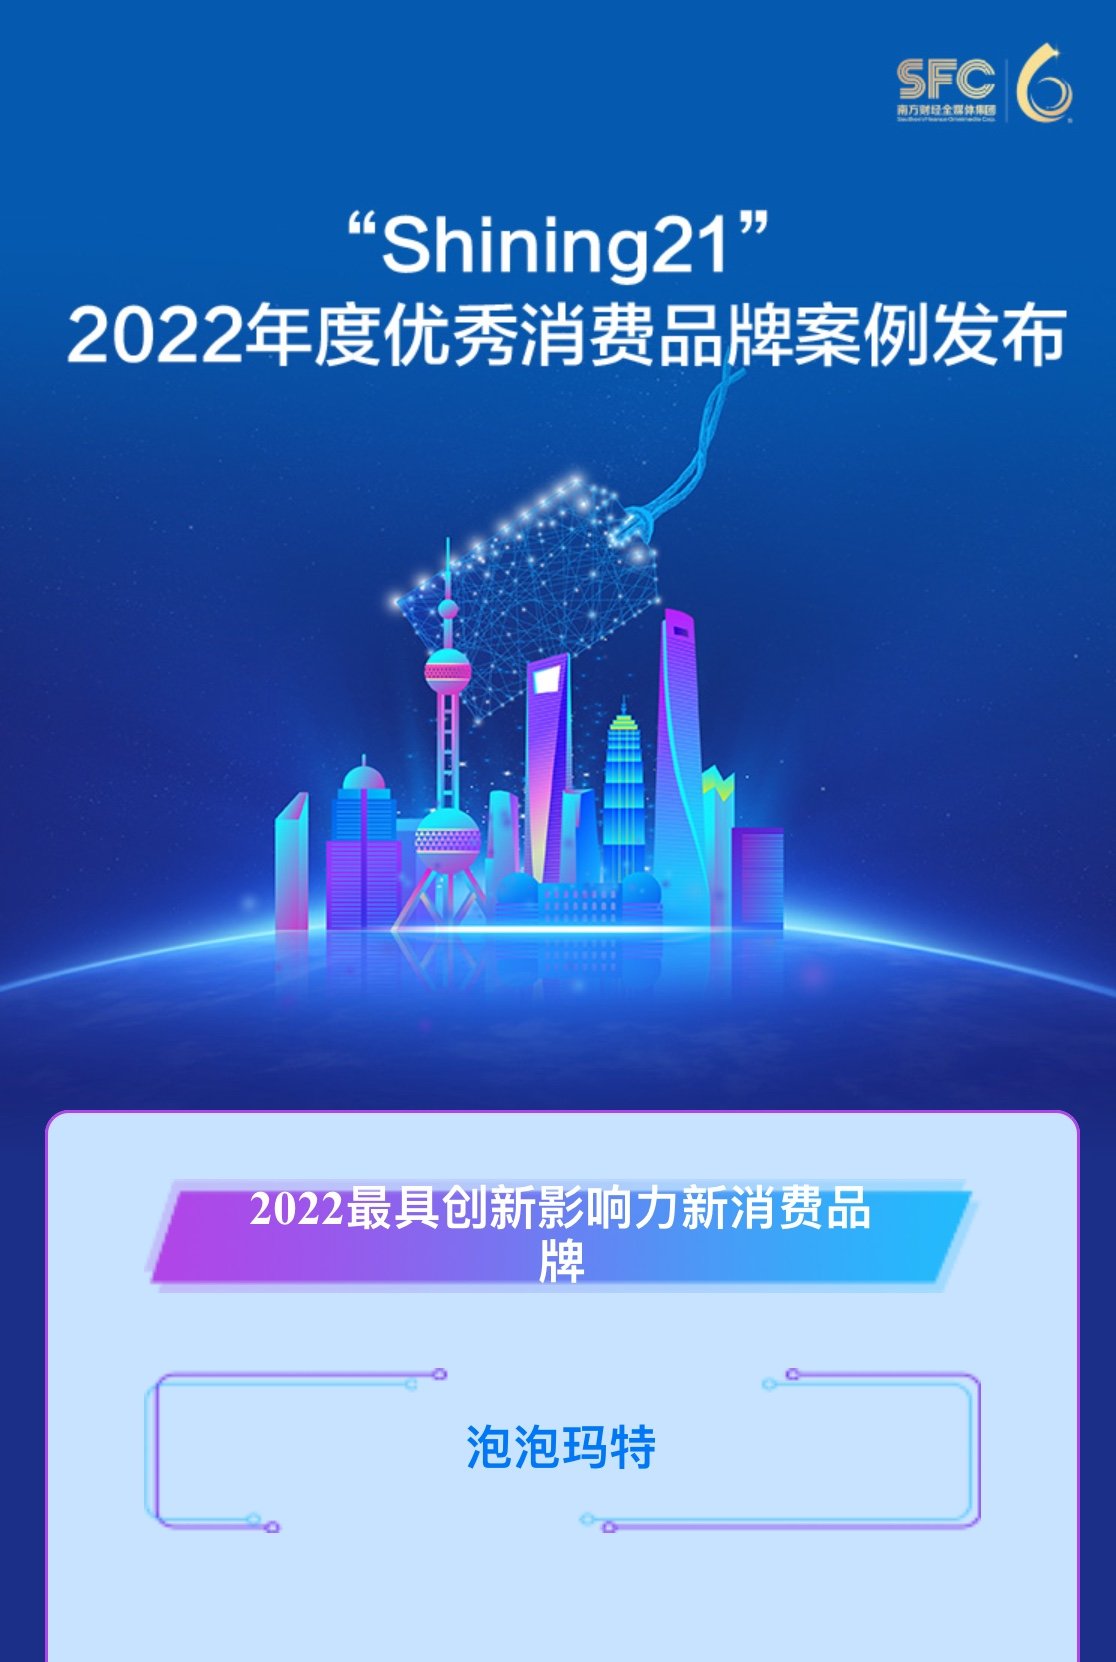 泡泡玛特获评“Shining21”2022最具创新影响力新消费品牌